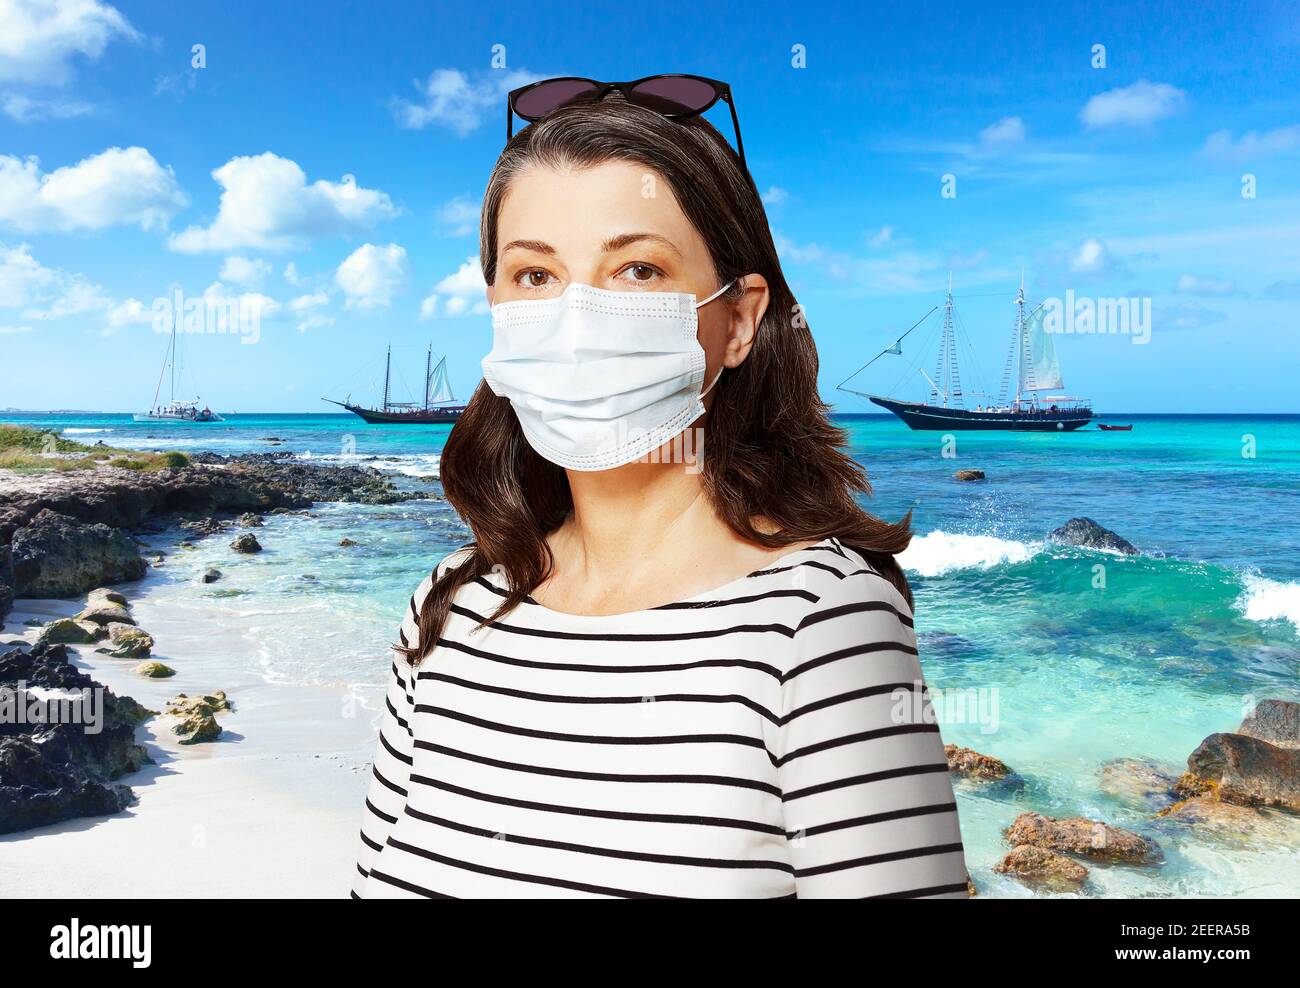 Viaggio verso una destinazione soleggiata durante la corona o covid pandemic: turistico con occhiali da sole e maschera medica viso di fronte a una spiaggia tropicale. Foto Stock